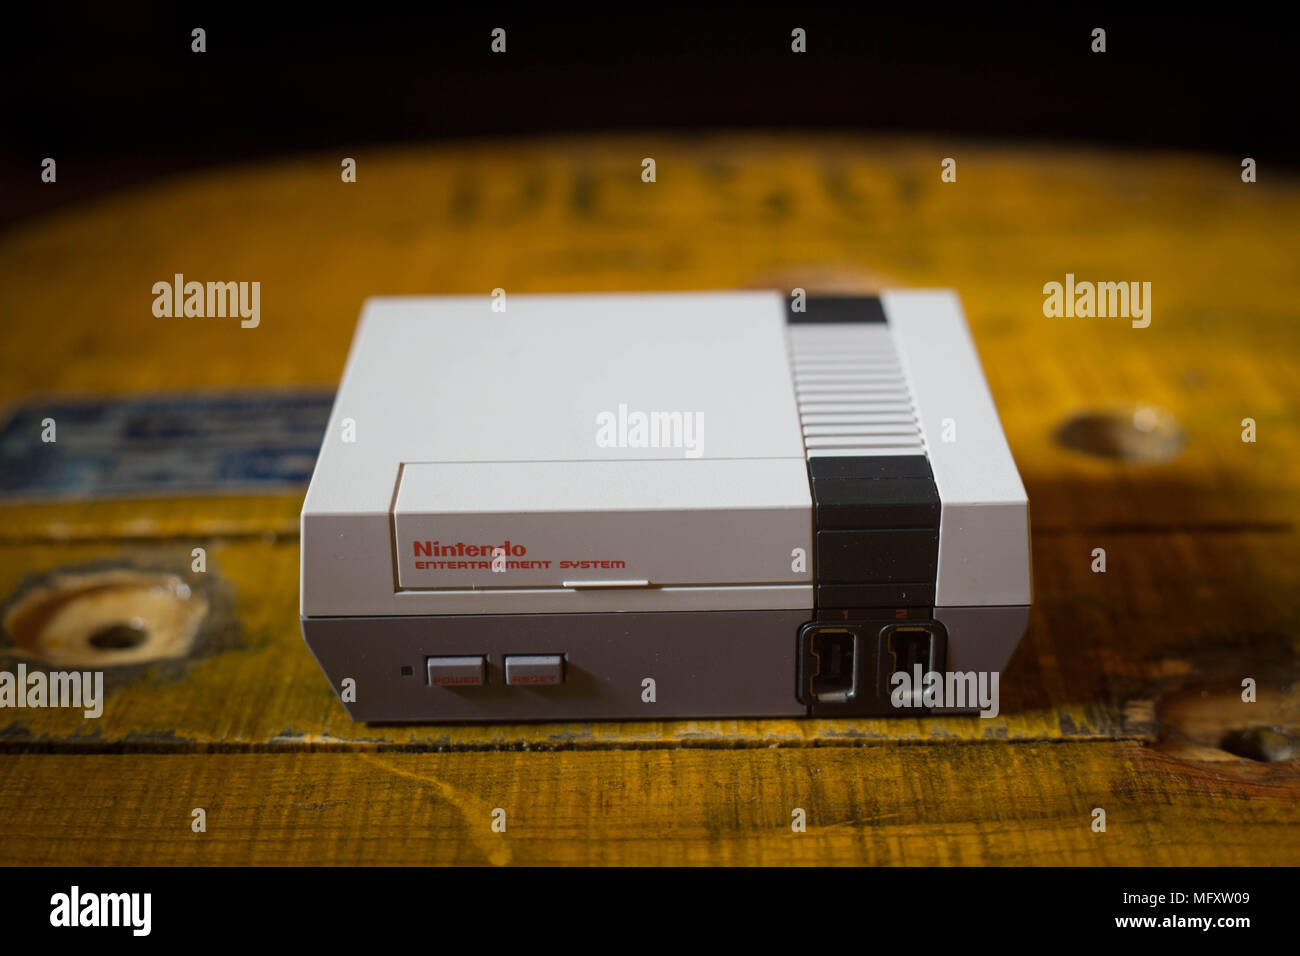 Ein Nintendo Classic Mini "Nintendo Entertainment System" Video Spiele  Konsole. Das Kyoto-basierte Video Game Company Nintendo endete es Comeback  Jahr Umsatz mit im Wert von $ 9 Mrd. nach ein herrliches Jahr